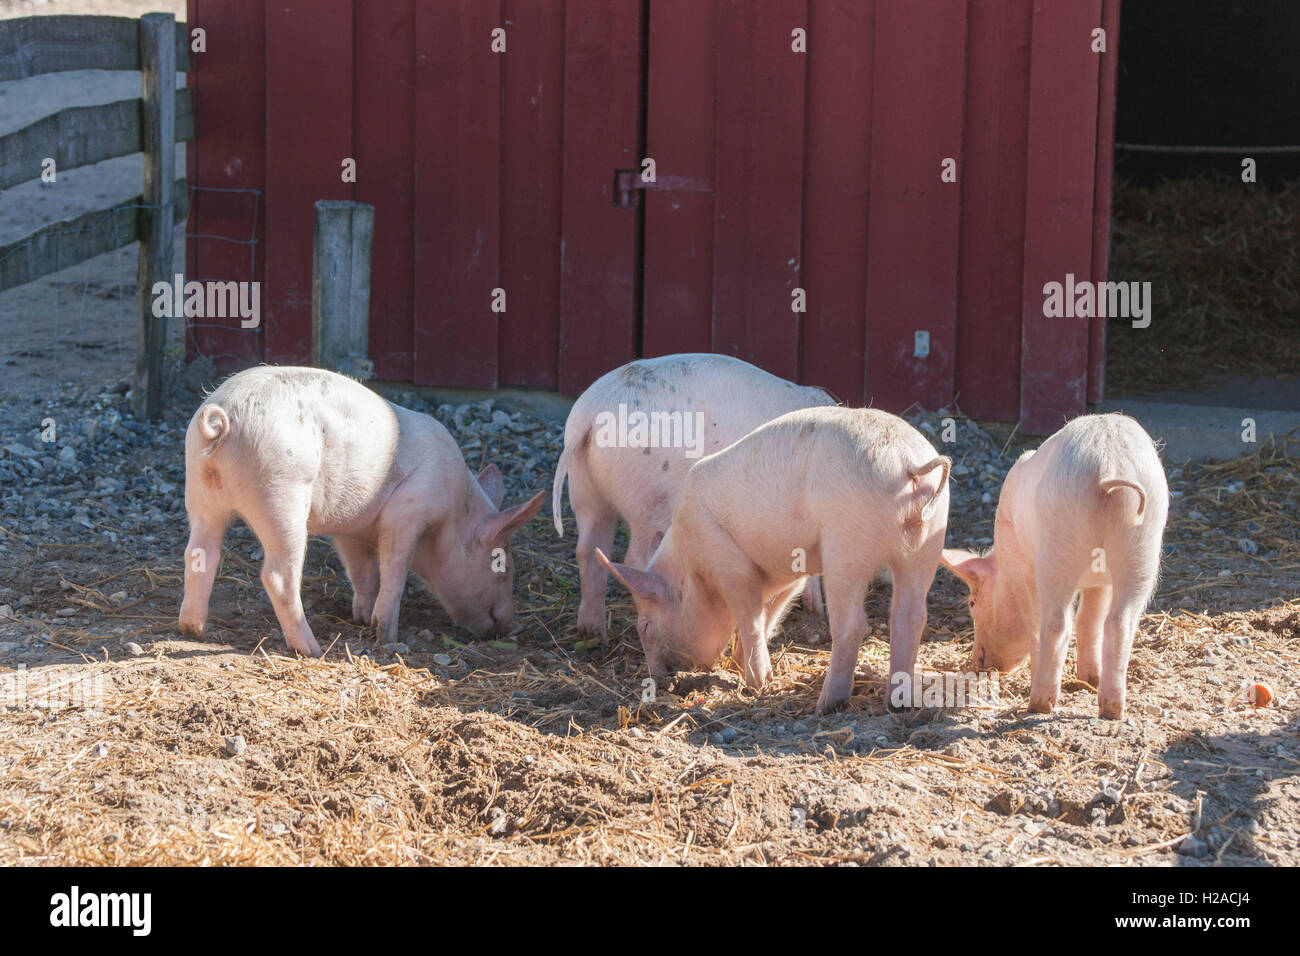 La basse-cour avec quatre cochons rose à la recherche de nourriture dans l'été Banque D'Images